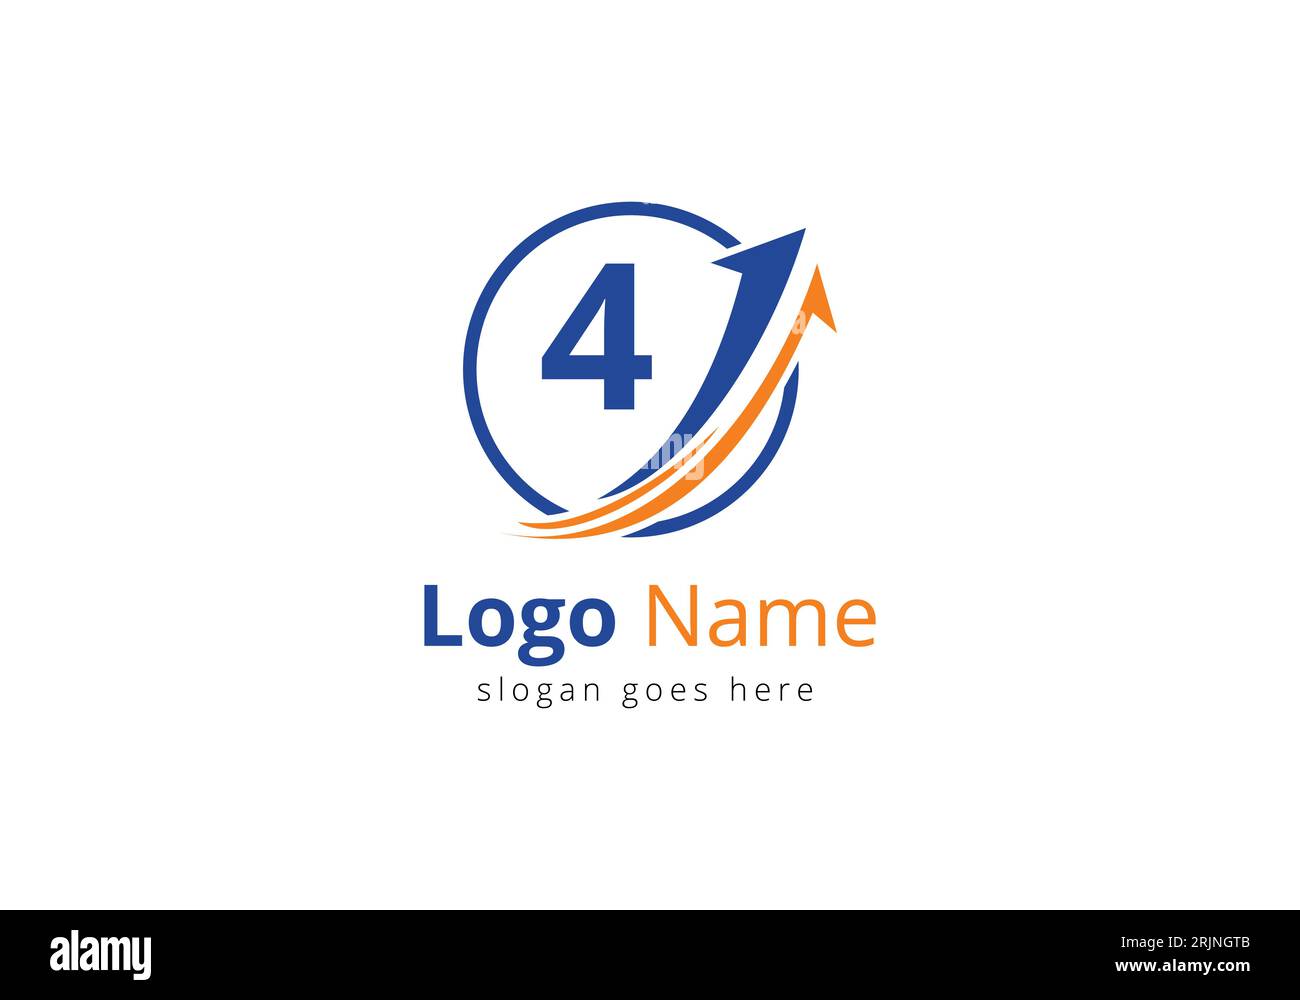 Logo de financement avec concept de 4 lettres. Concept de logo financier ou de réussite. Logo pour l'entreprise comptable et l'identité de l'entreprise Illustration de Vecteur